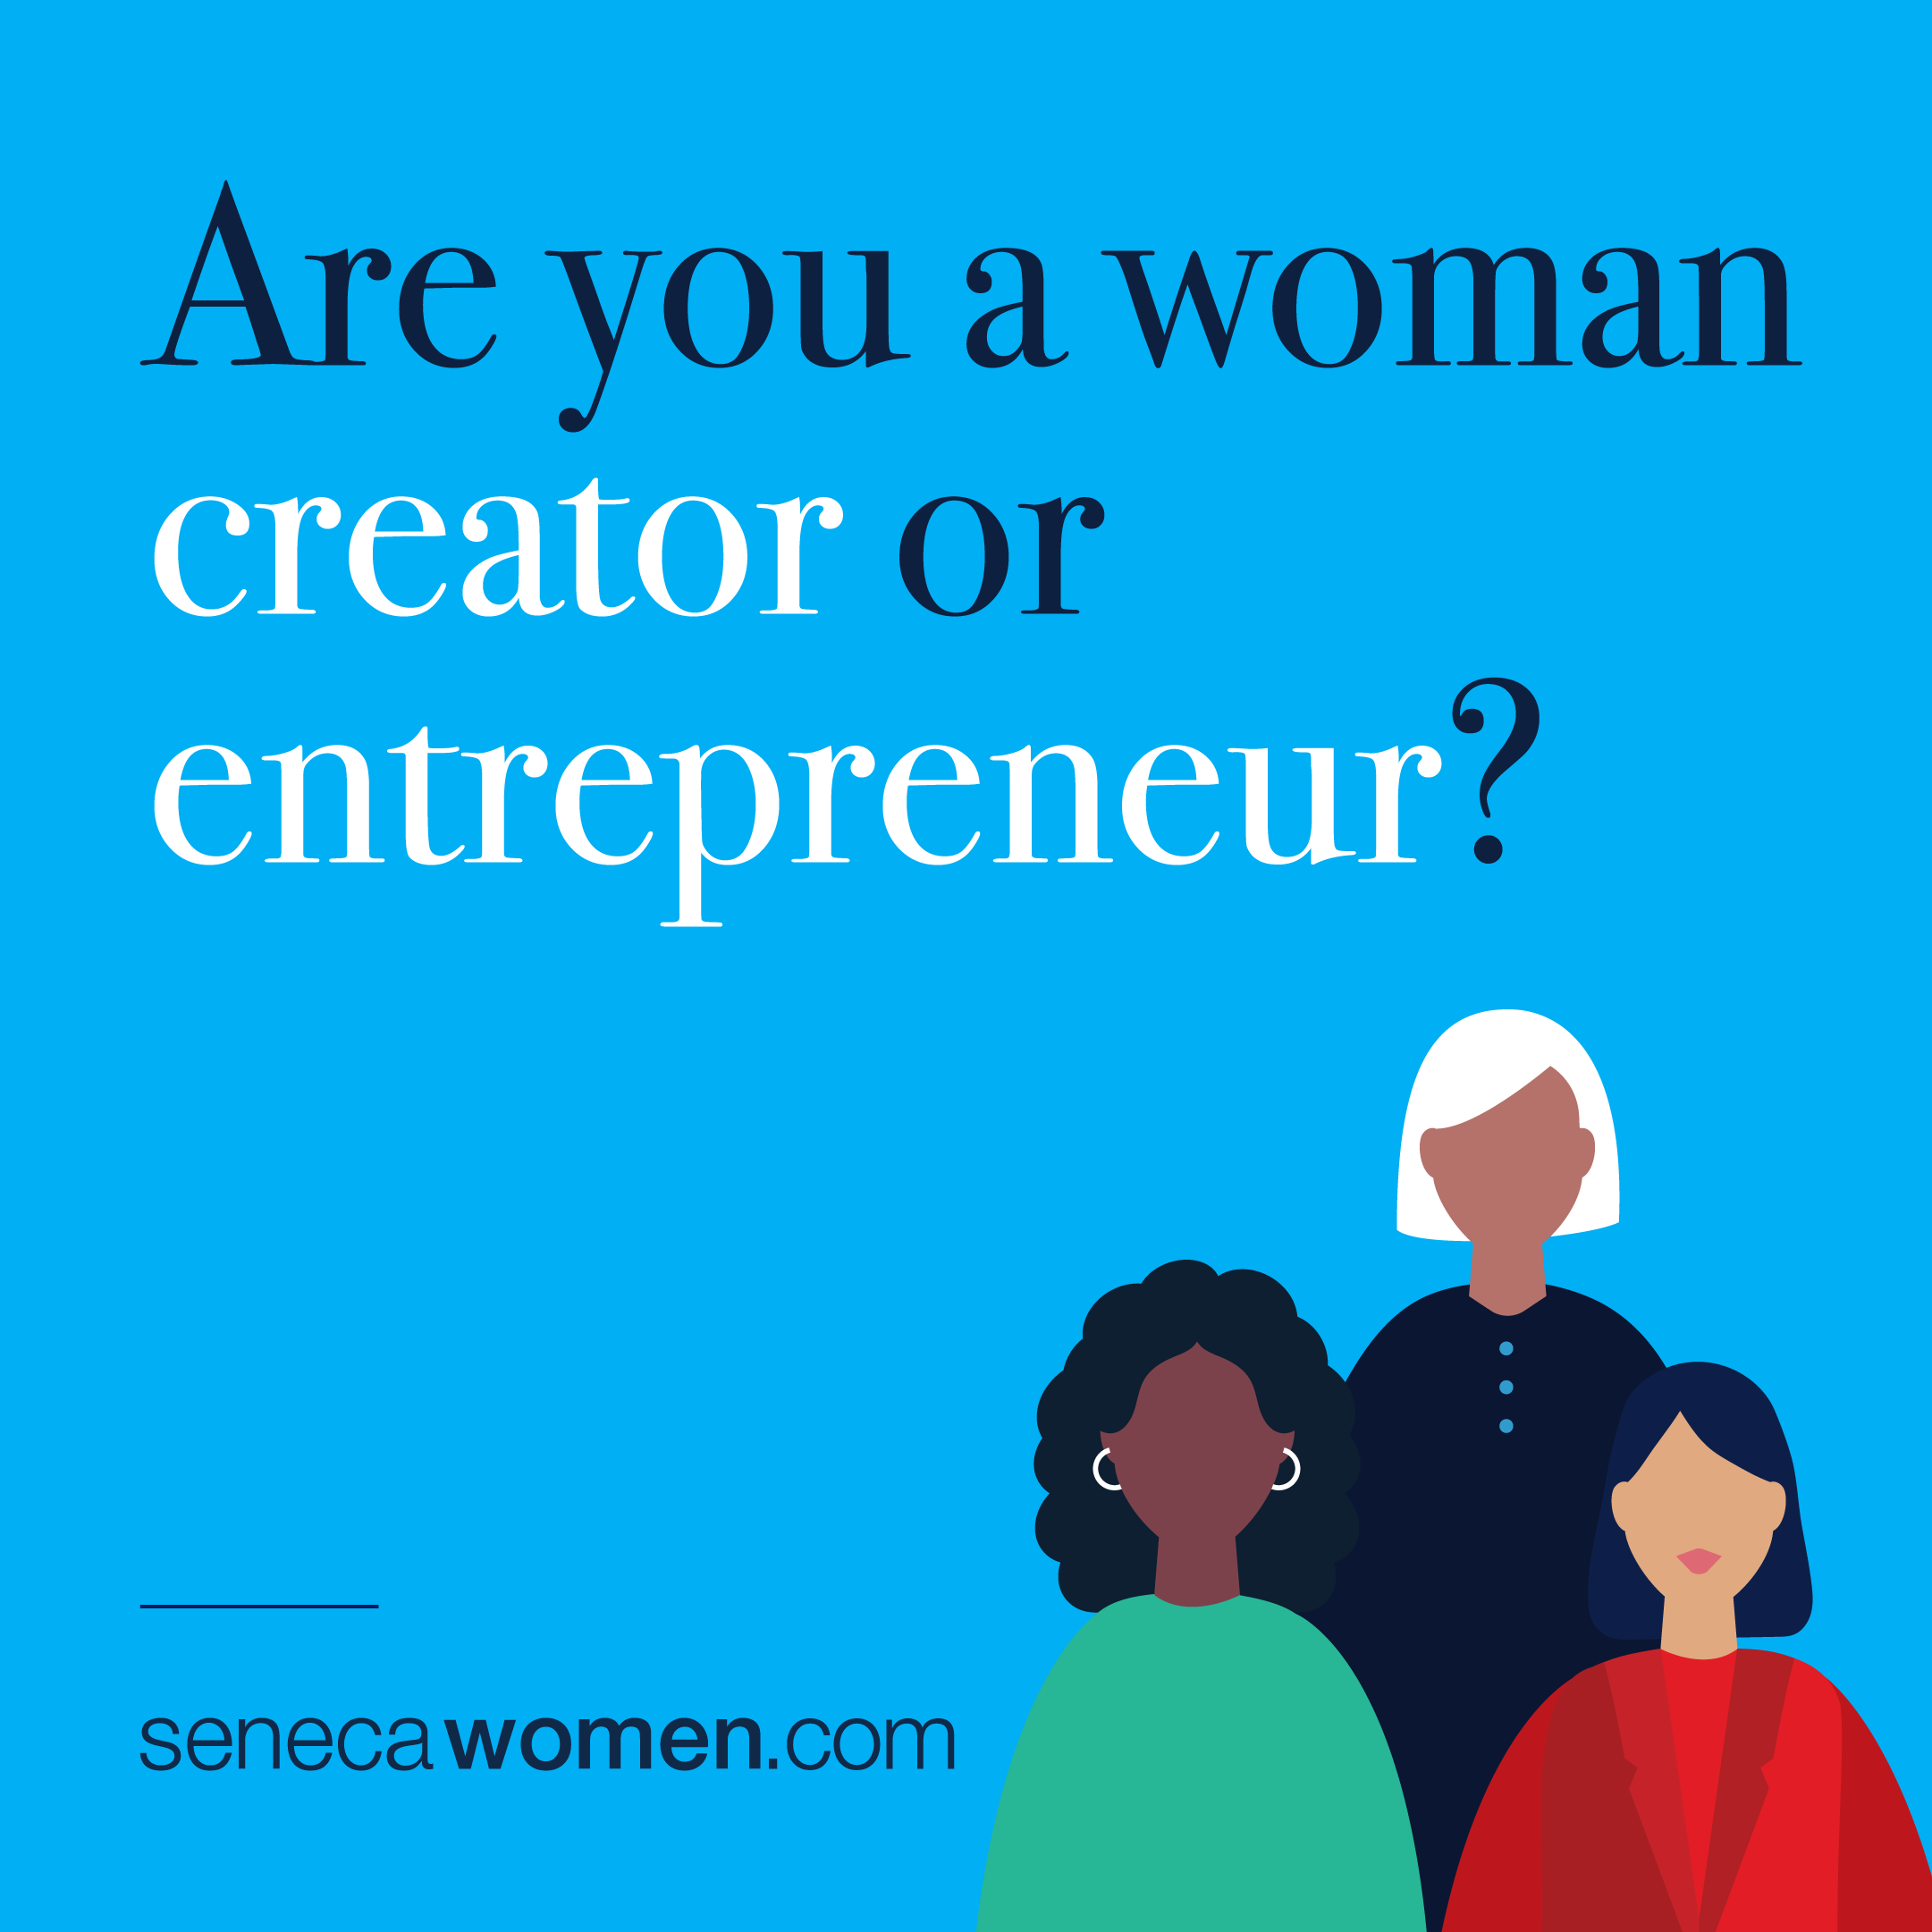 Are you a woman creator or entrepreneur? - senecawomen.com